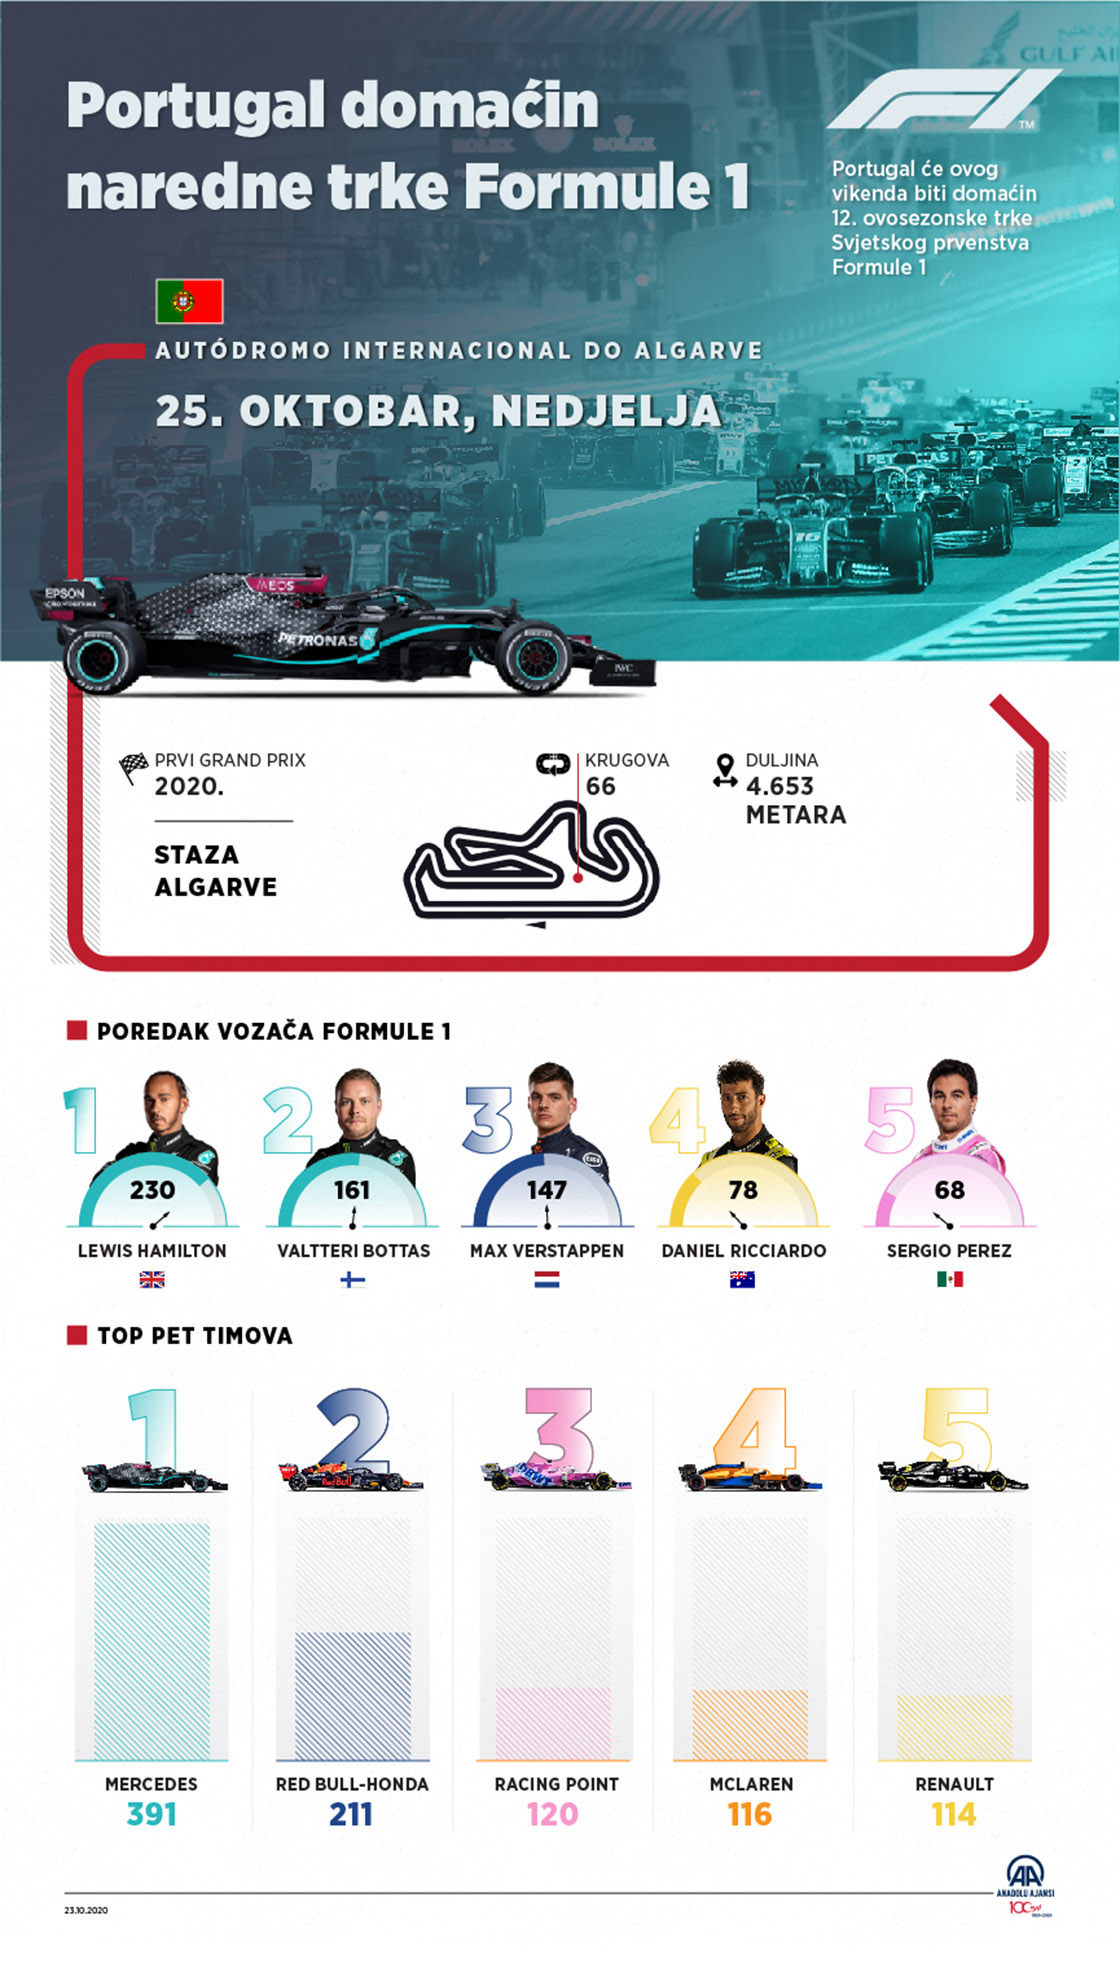 Portugal domaćin naredne trke Formule 1 